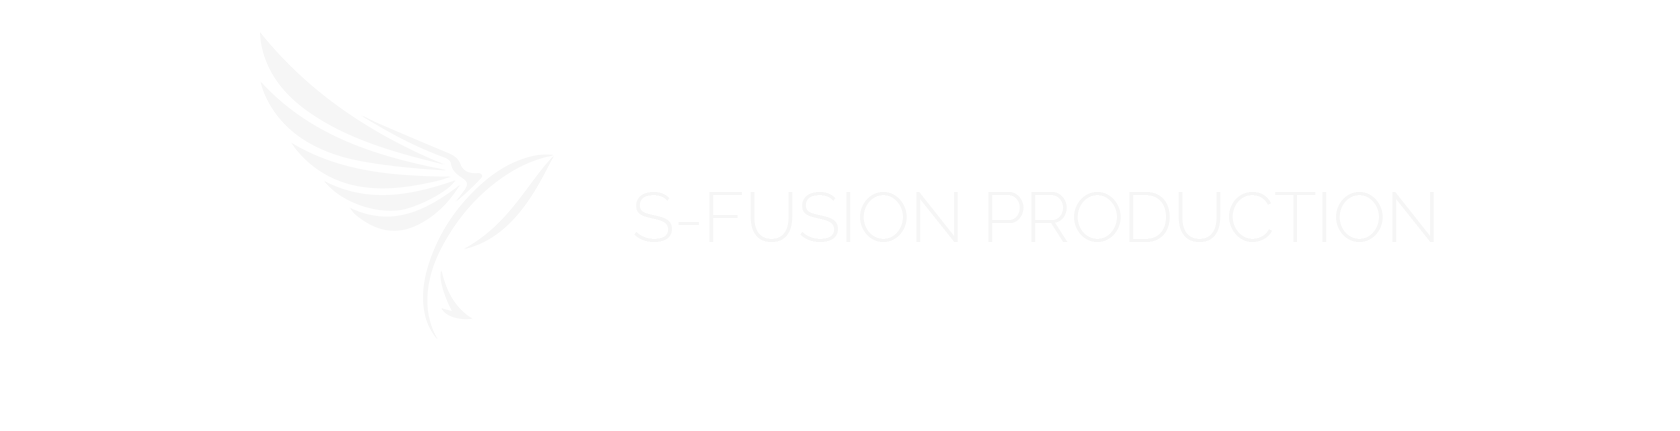  S-FUSION PRODUCTION - Видеопроизводство для бизнеса в Москве, Санкт-Петербурге и регионах. 